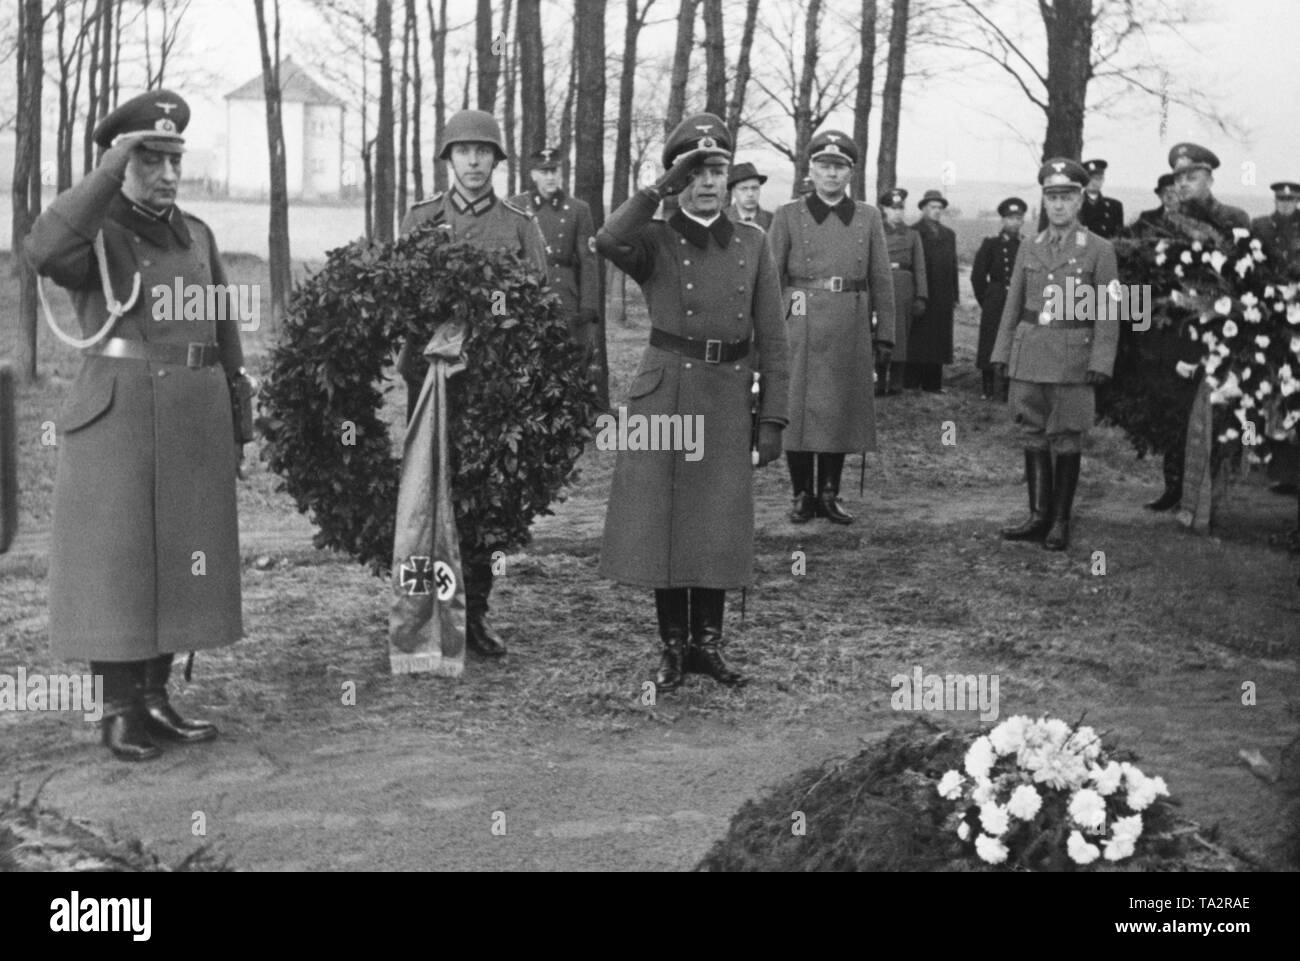 Der Kommandant der Stadt Prag, Kurt von Briesen, auf dem Soldatenfriedhof Sterbohol. Die Soldaten legen einen Kranz nieder. Die erste slowakische Republik wurde auf Hitlers Befehl im März 1939 gegründet, und Böhmen und Mähren wurden von der Wehrmacht besetzt. Stockfoto